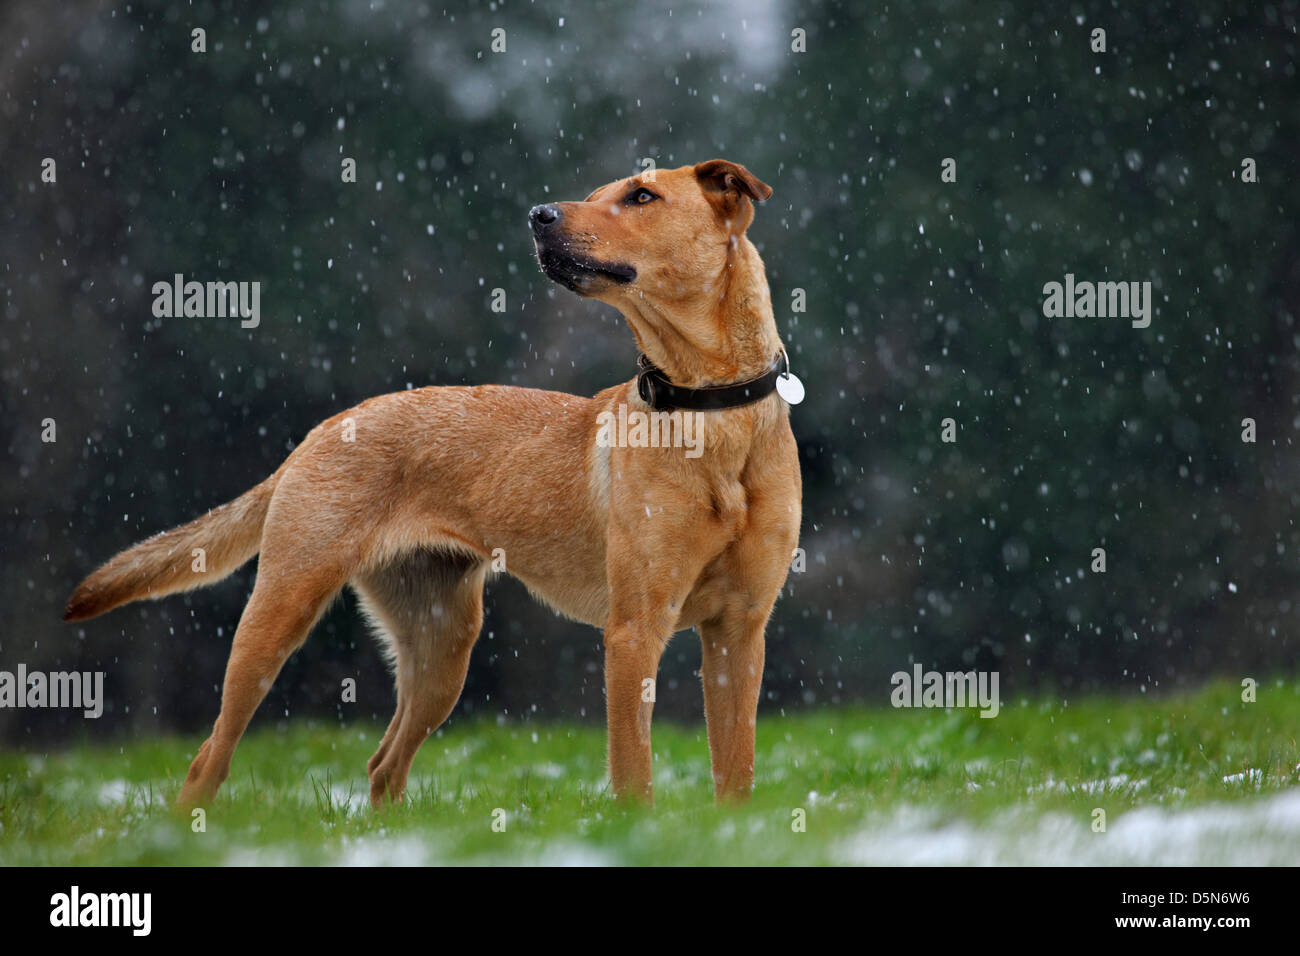 Mixed-razza cane (Labrador - Belga cane pastore / Malinois) nella neve in inverno Foto Stock